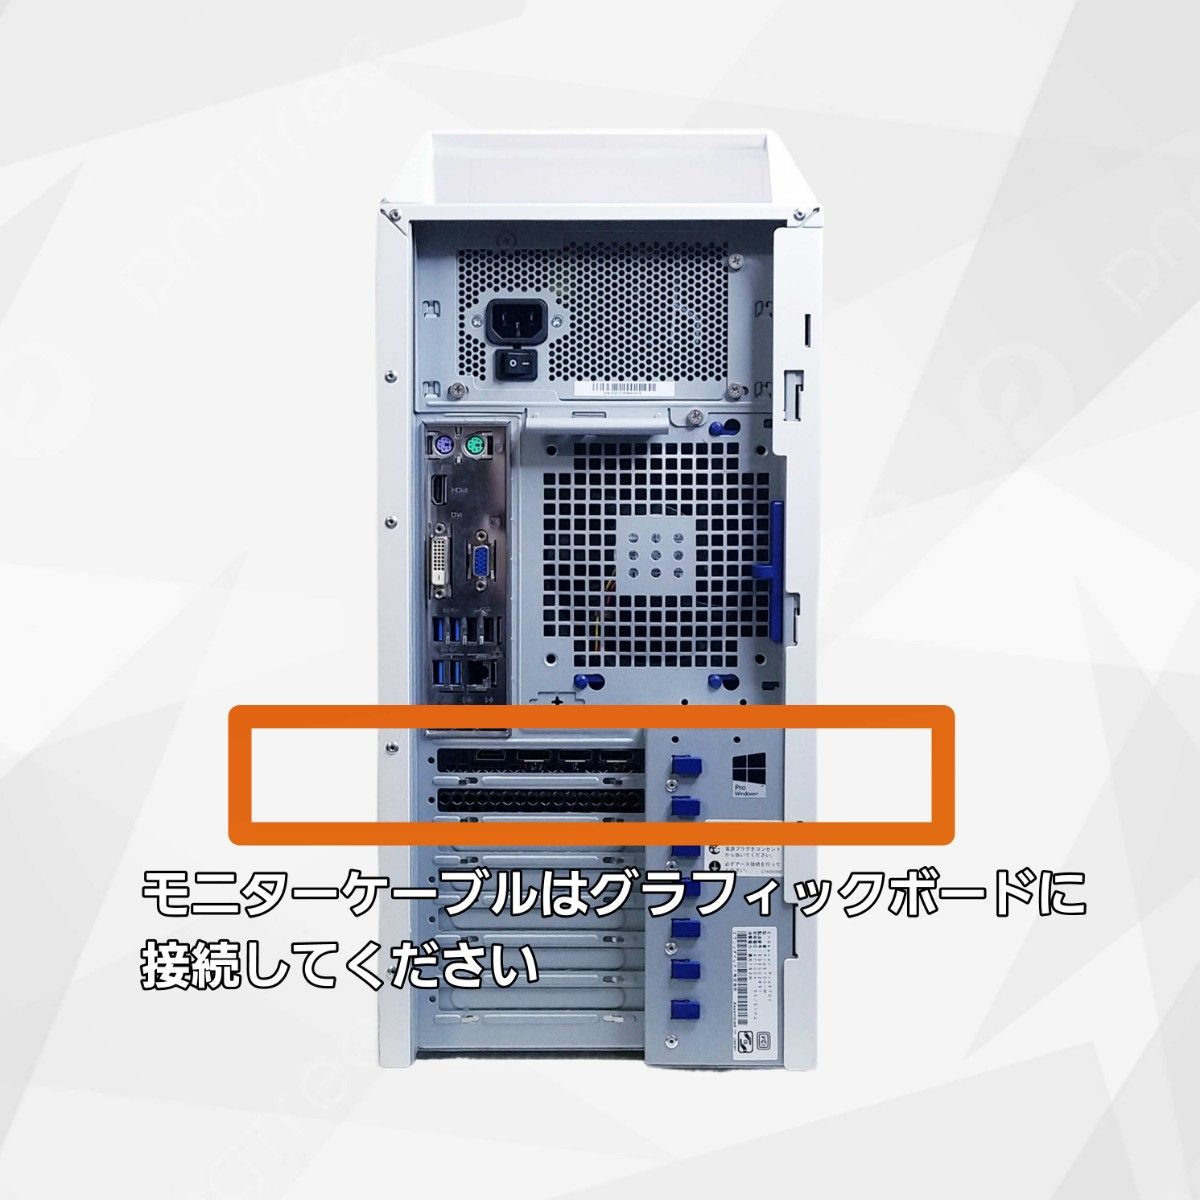 RTX GB Core i7 K メモリGB SSDGB 高性能ゲーミングPC